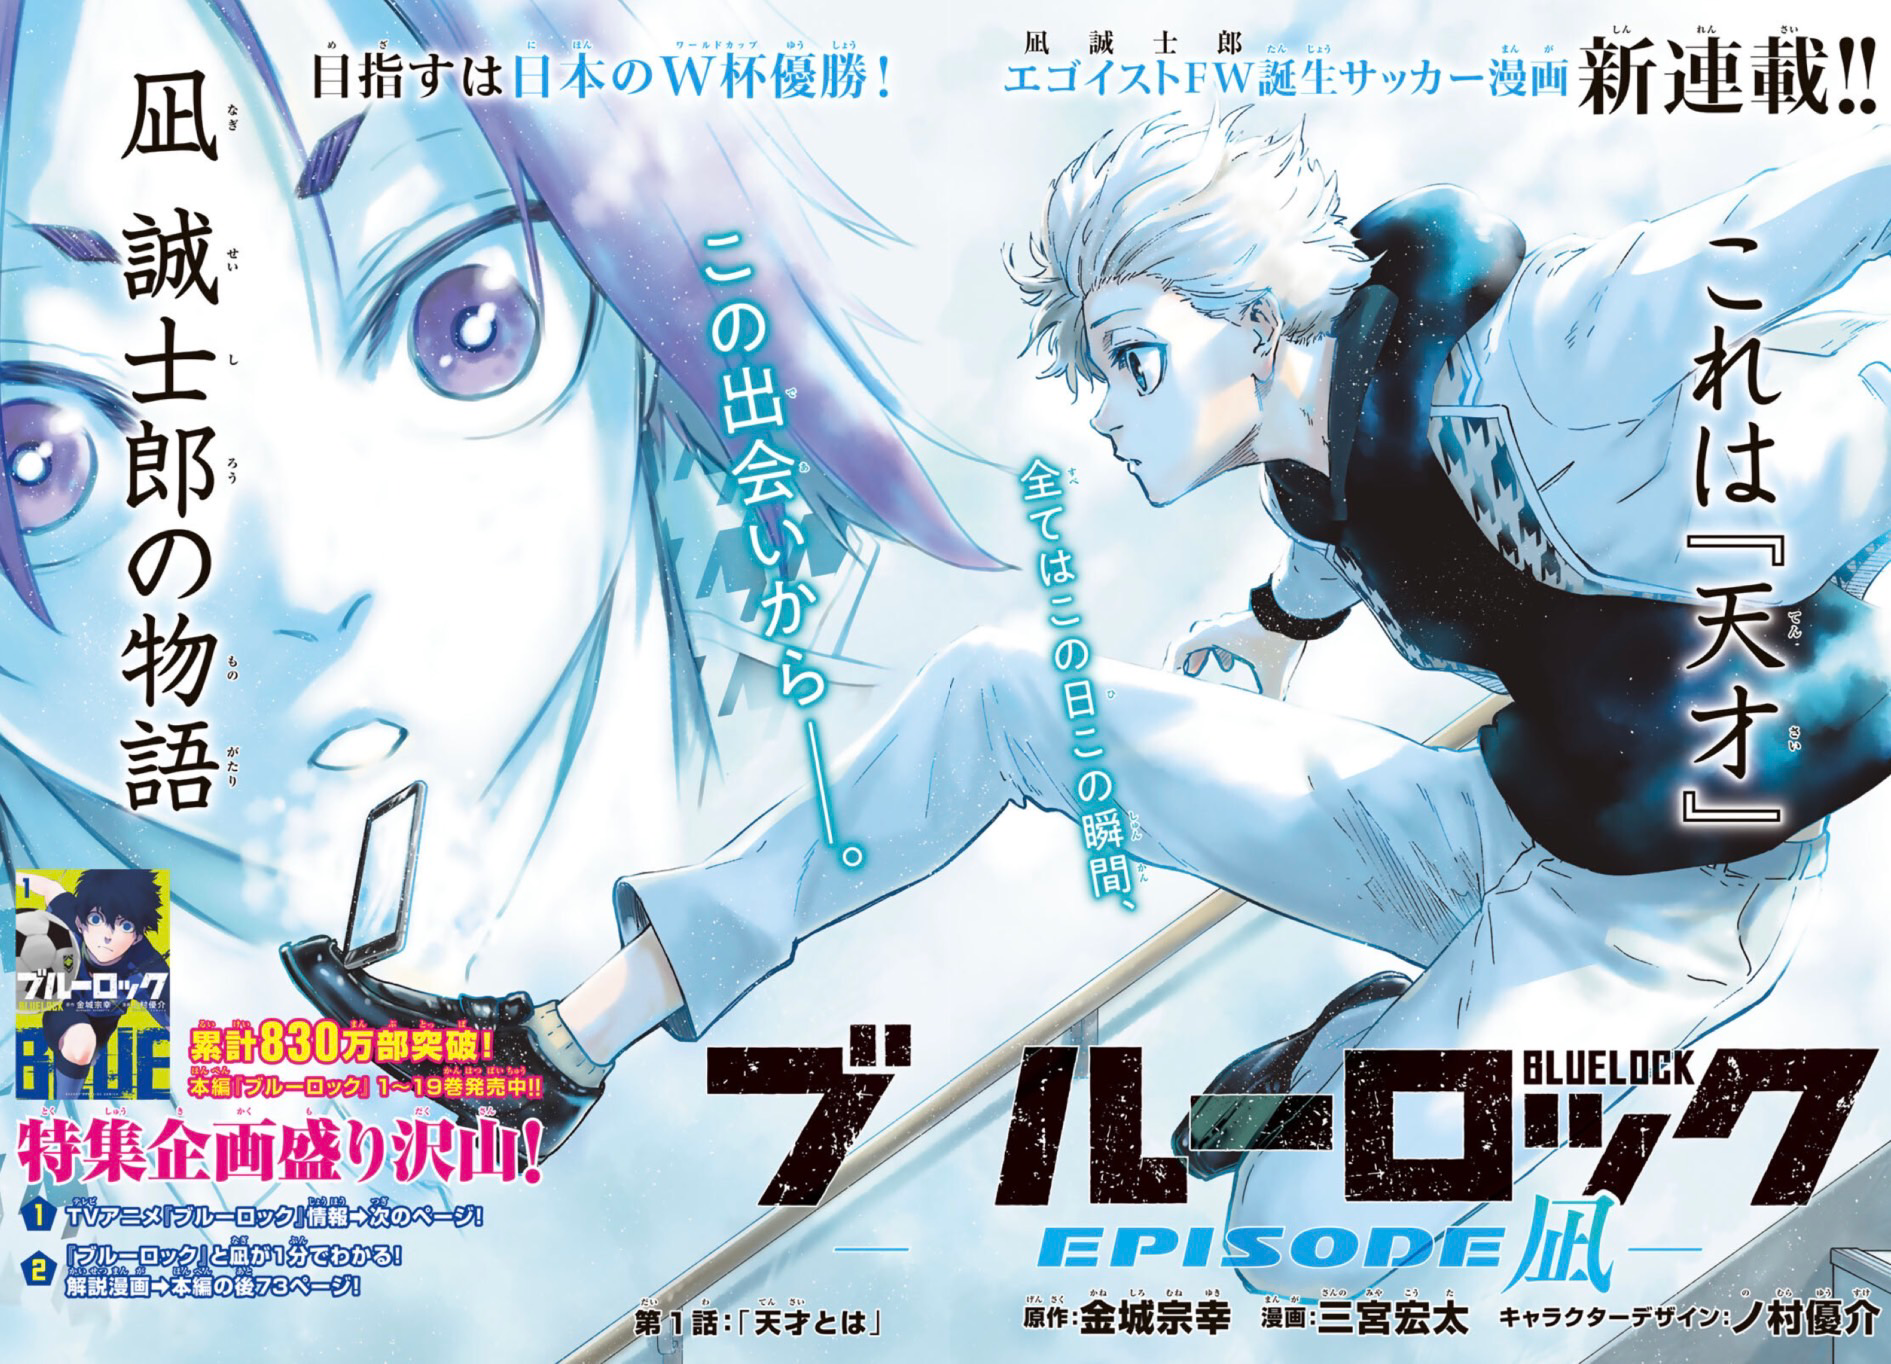 Blue Lock Manga Vol. 1, Blue Lock